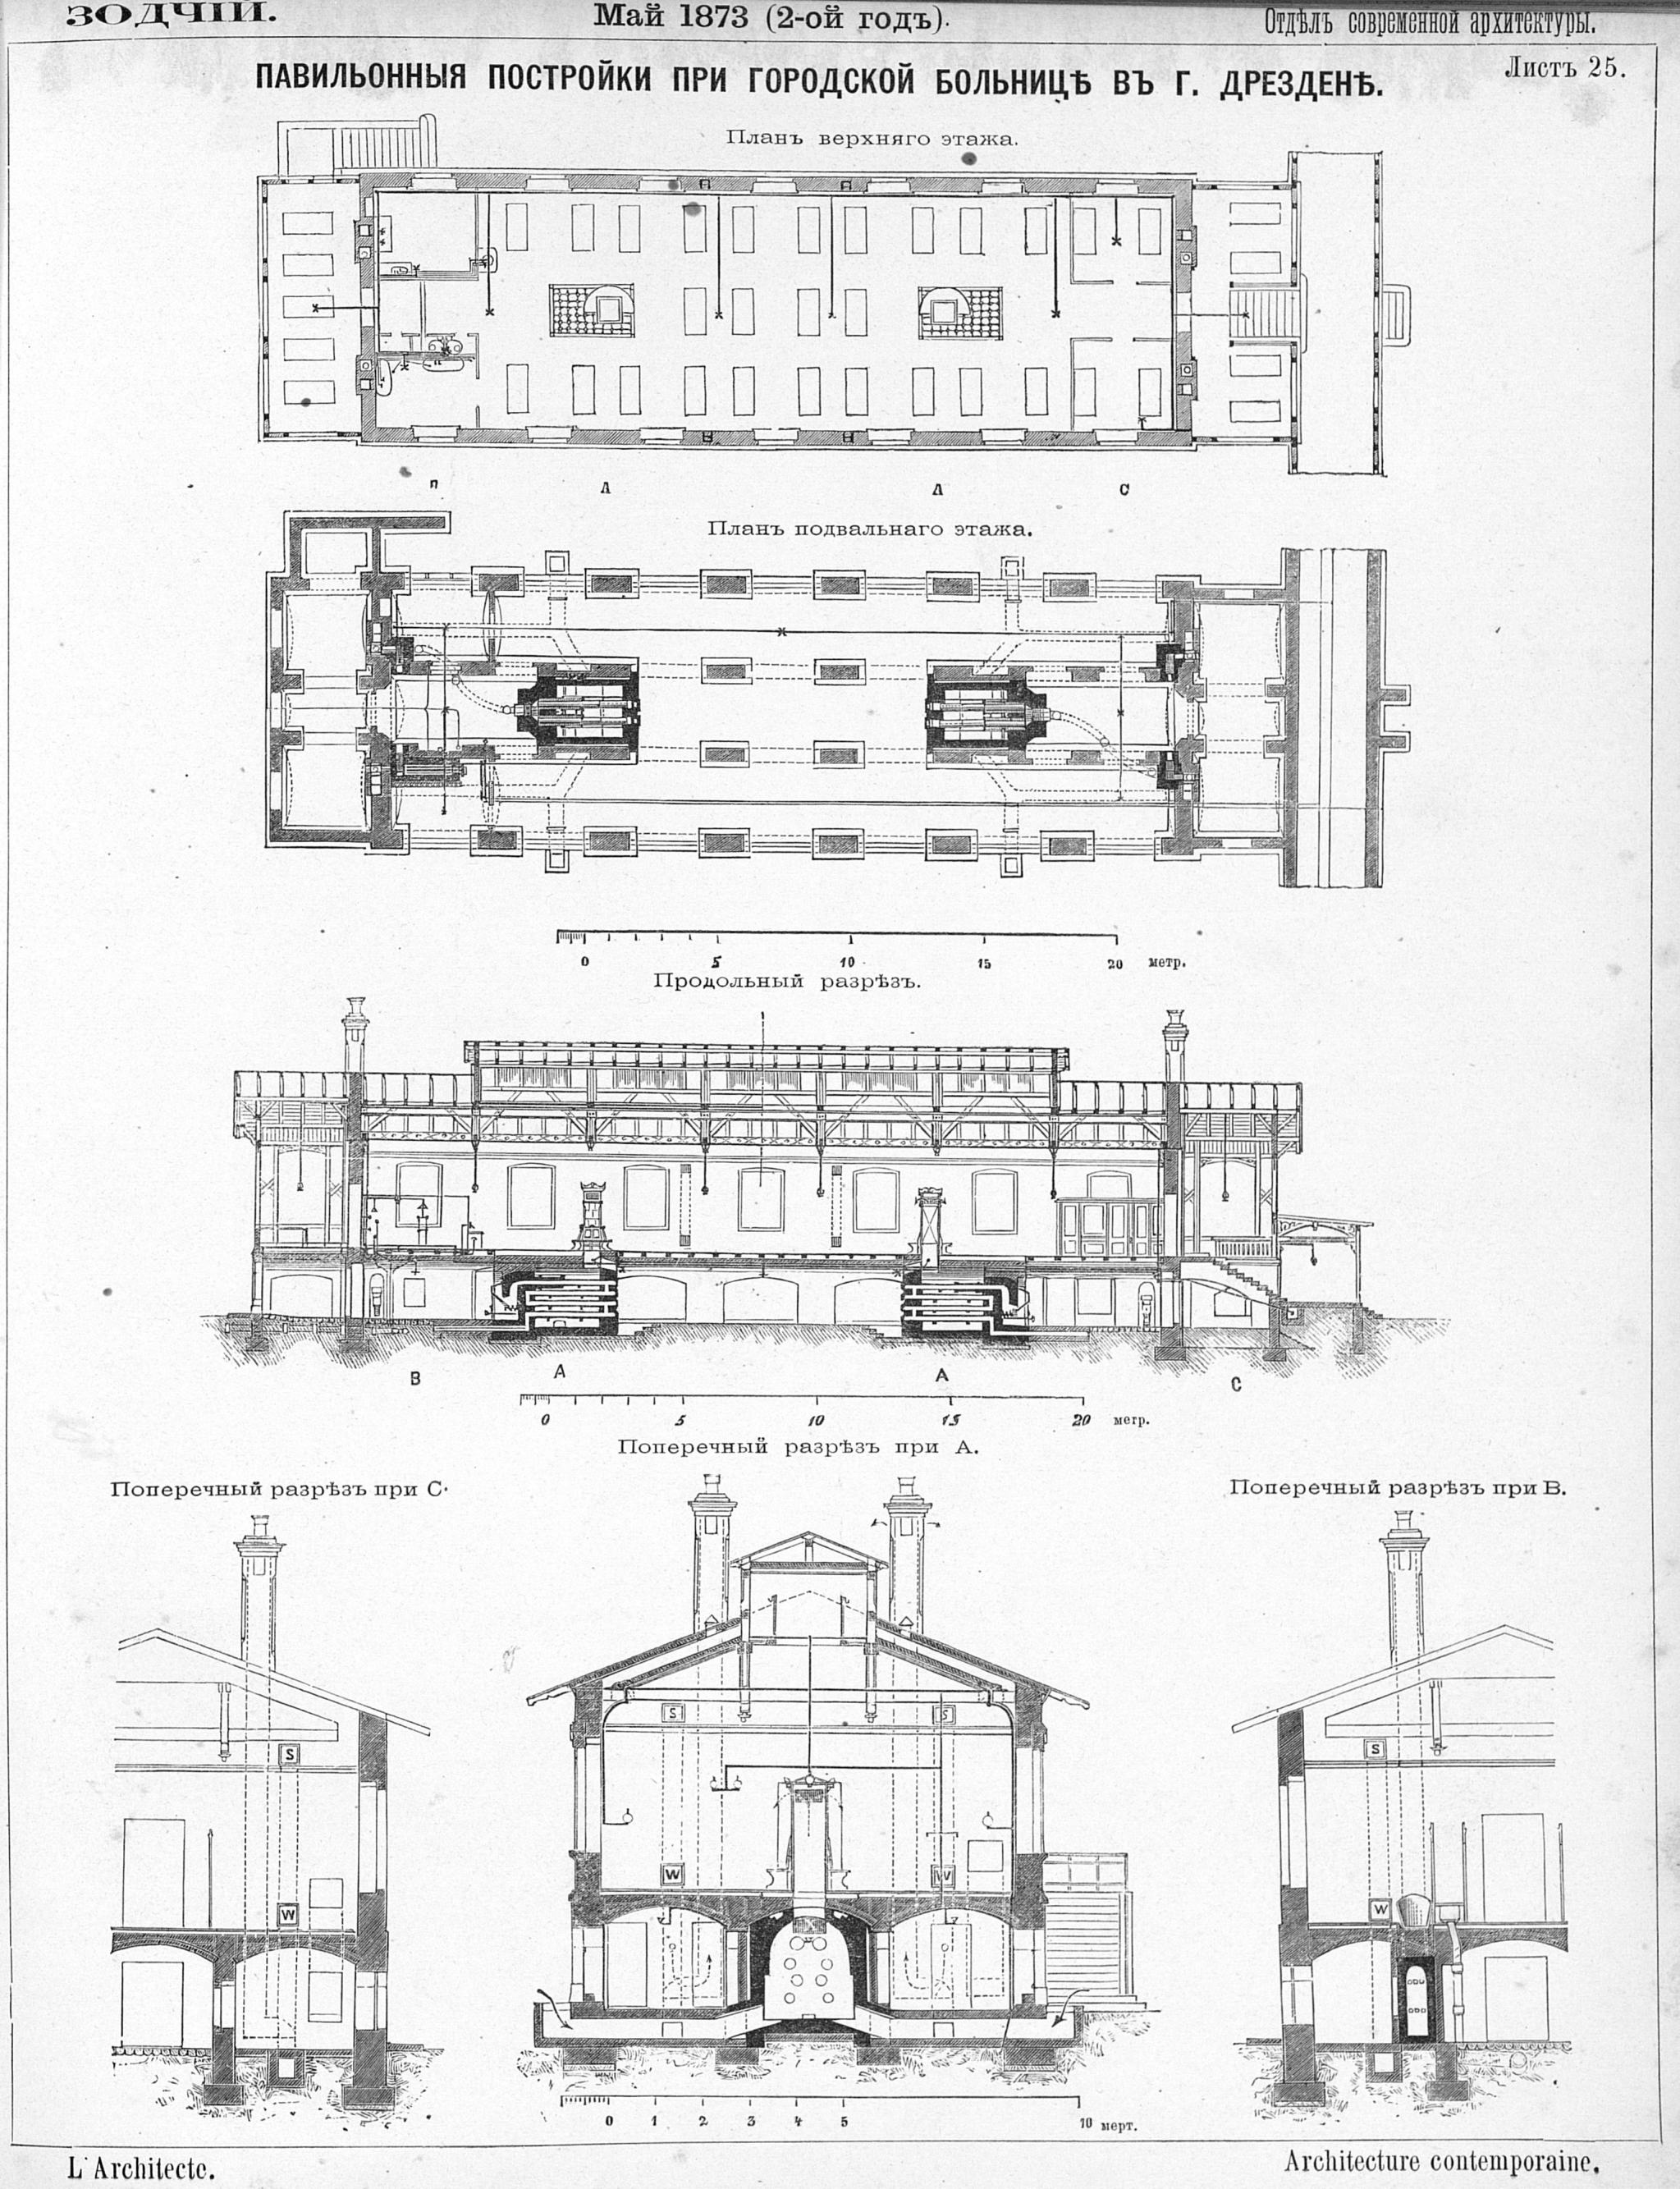 Лист № 25. Павильонные постройки при городской больнице в г. Дрездене. Ф. Фридрих